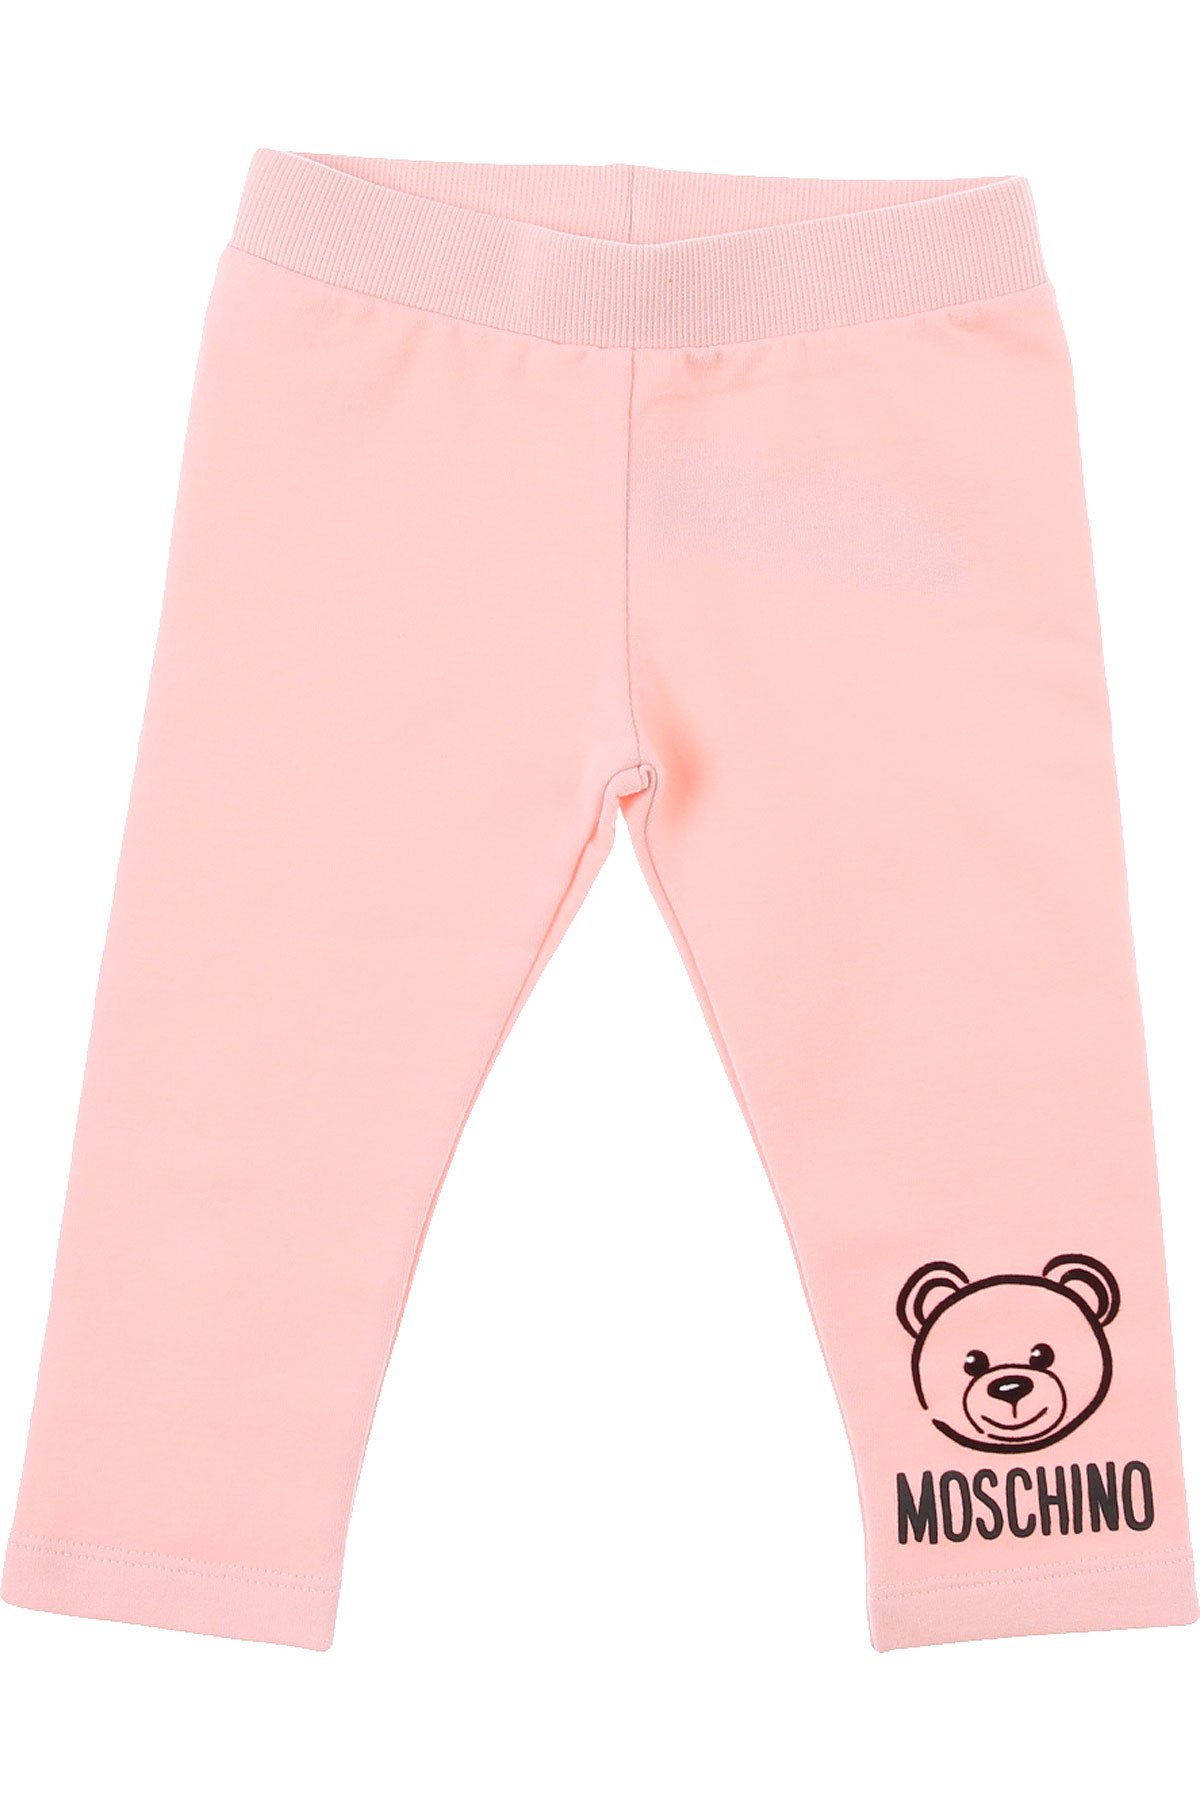 Moschino Baby Jogginghose für Mädchen Günstig im Sale, Pink, Baumwolle, 2017, 12M 18M 6M 9M